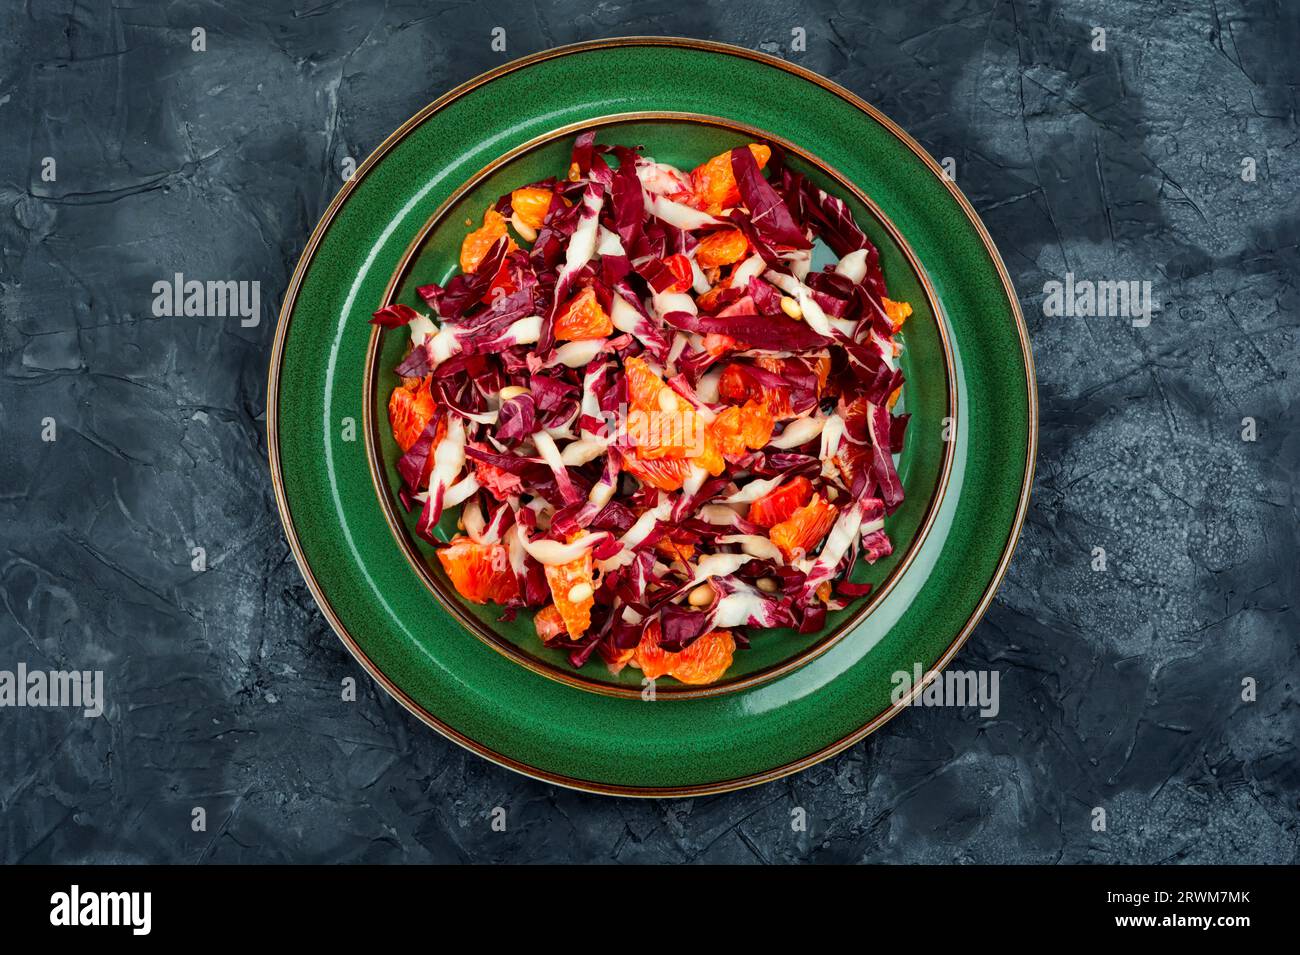 Salade de légumes avec chicorée, radicchio, pamplemousse et pignons sur une assiette Banque D'Images